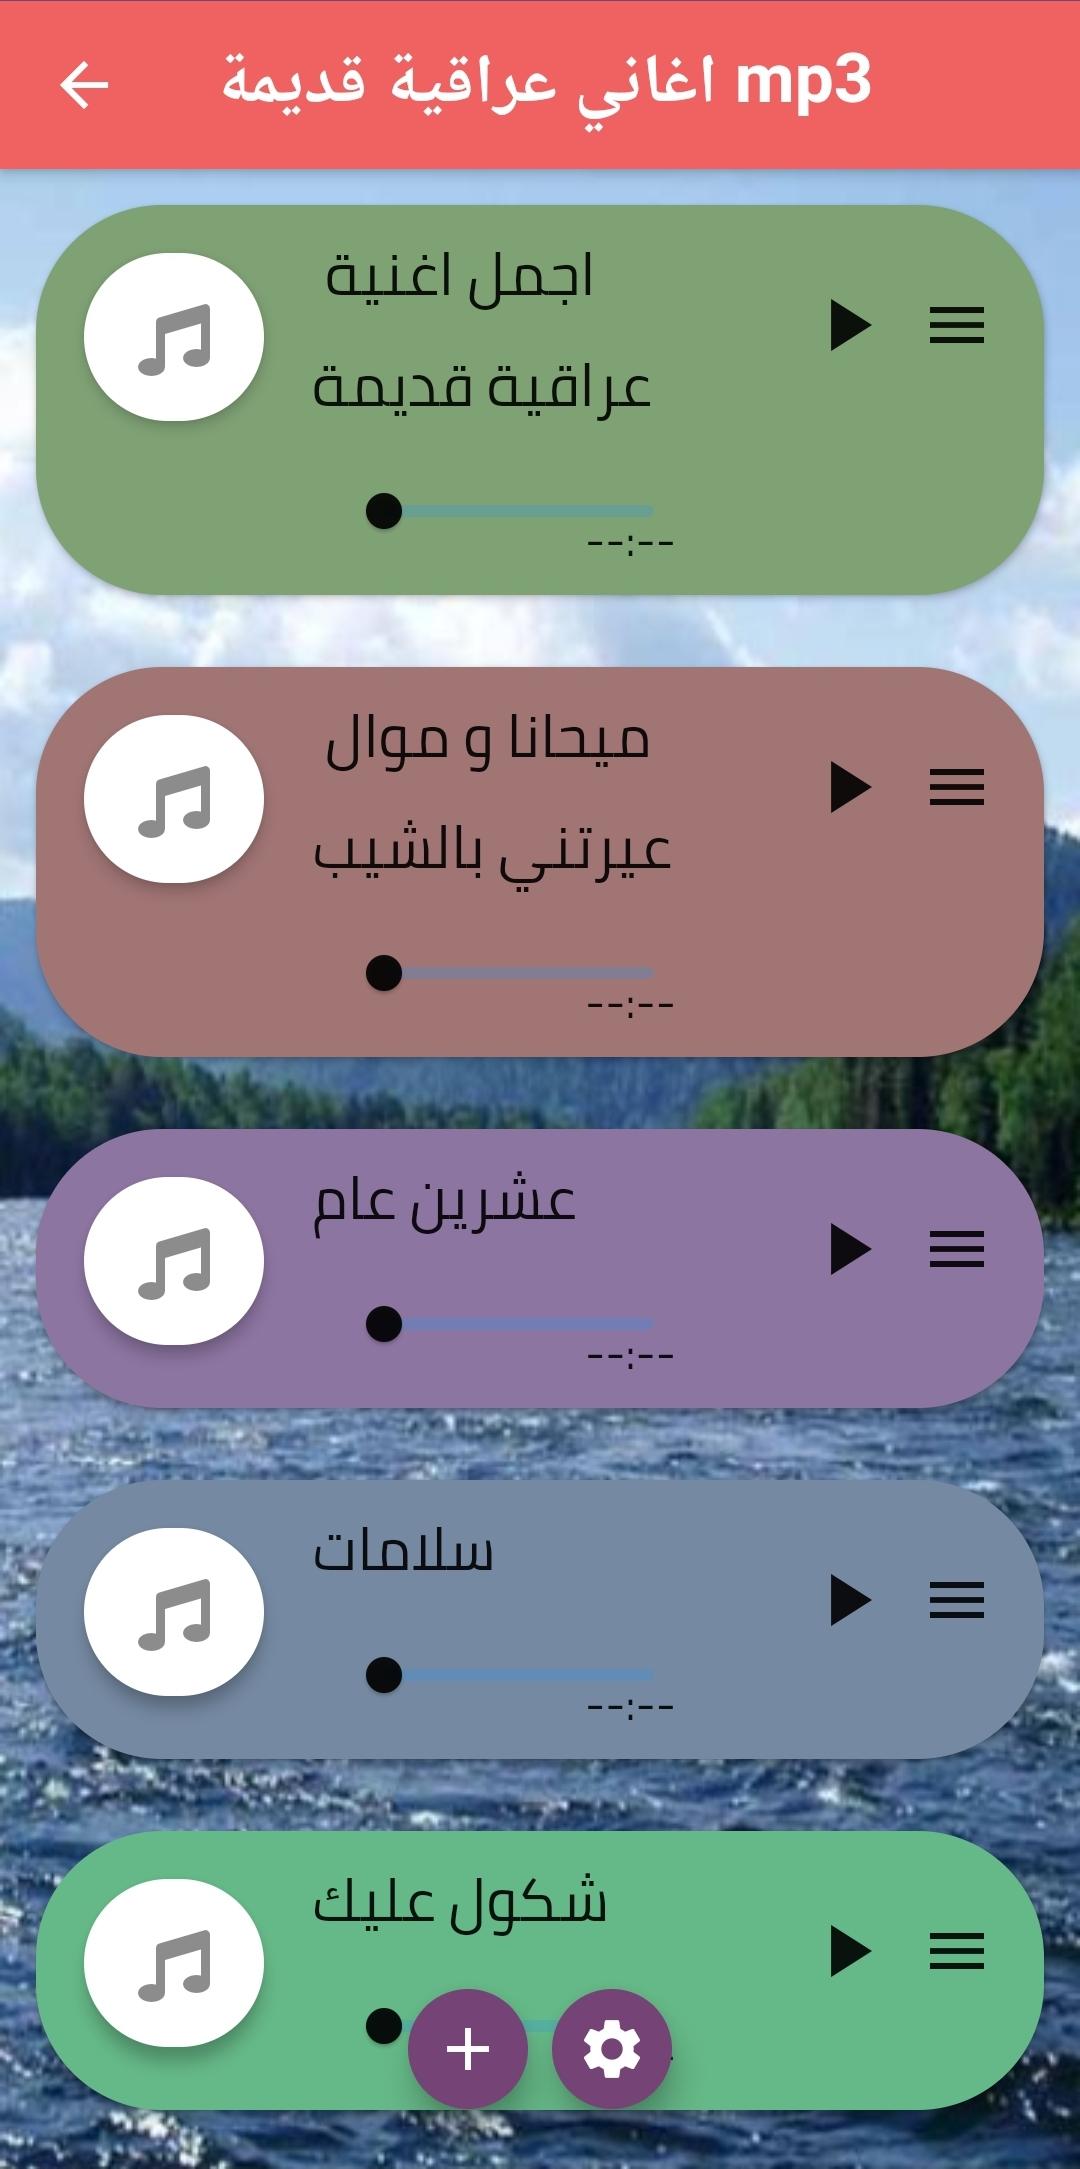 اغاني عراقية قديمة mp3 for Android - APK Download